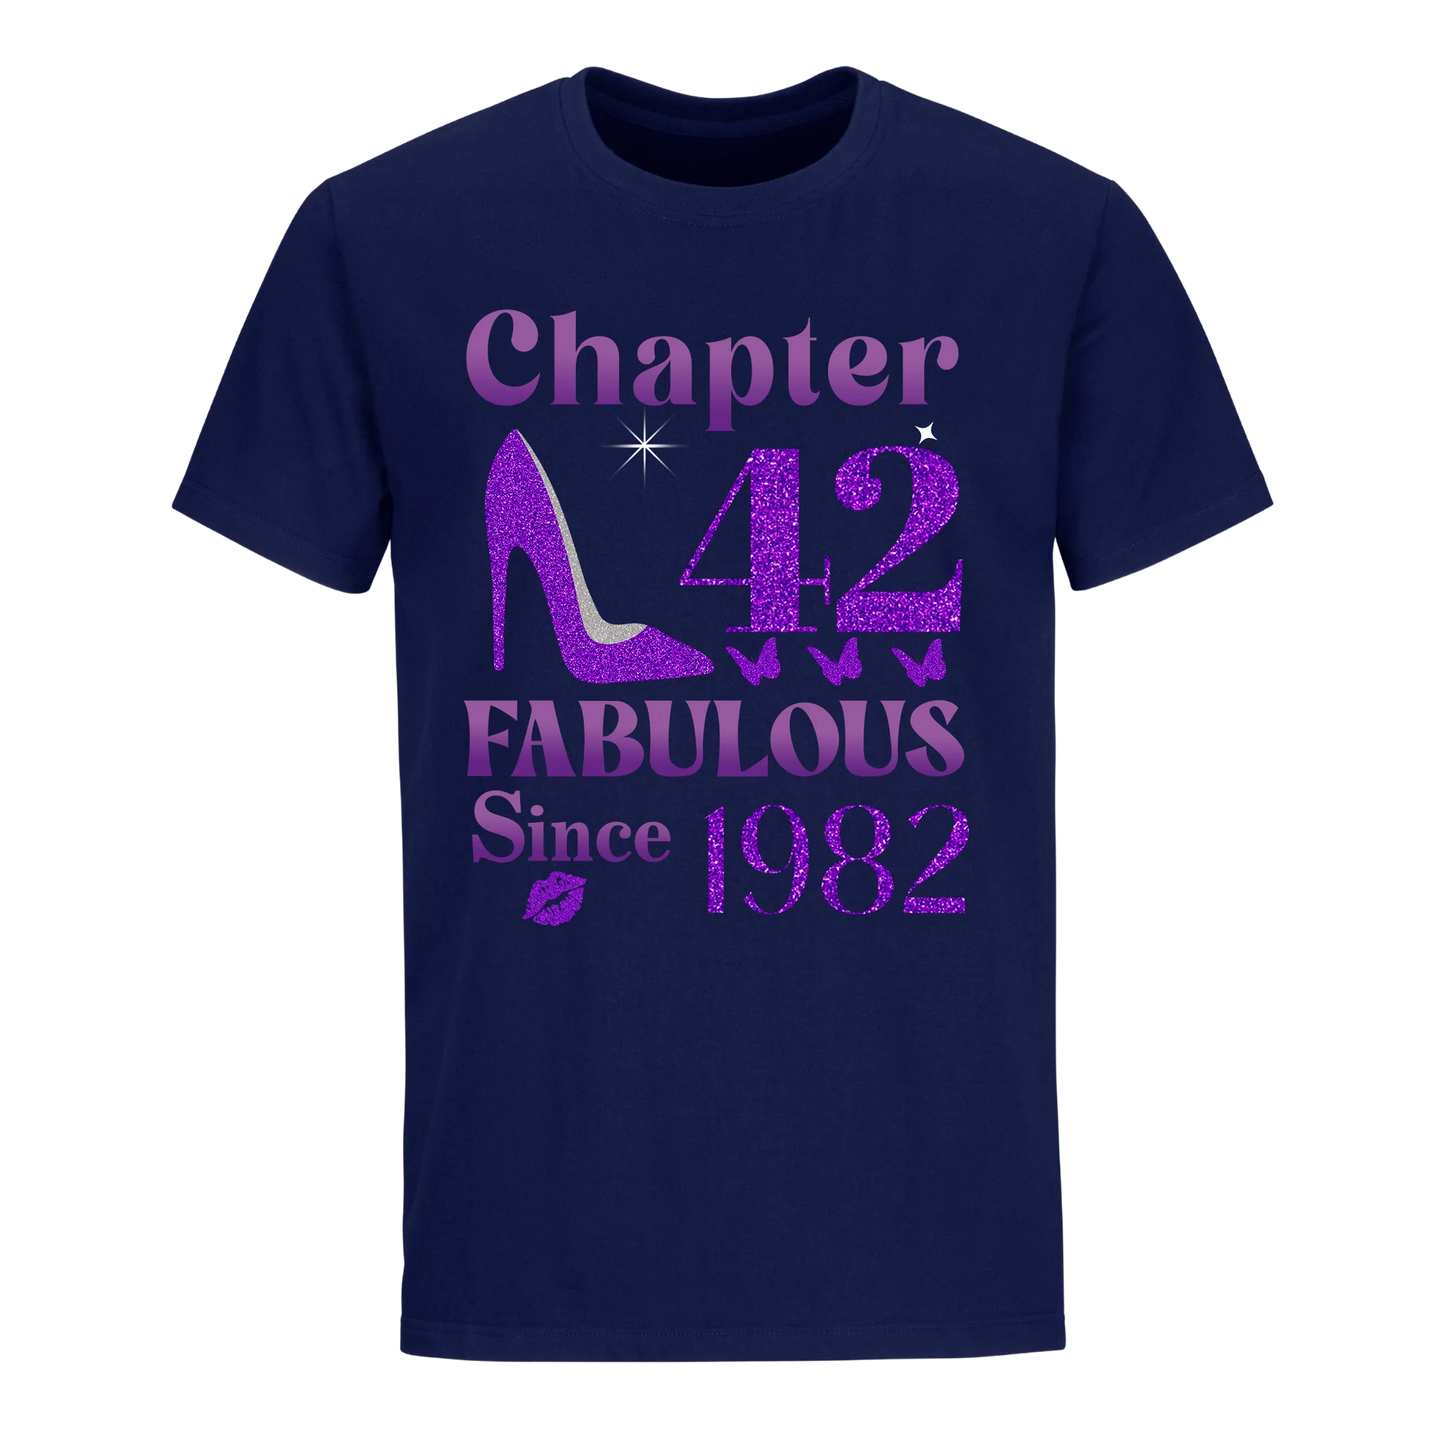 CHAPTER 42ND FABULOUS SINCE 1982 UNISEX SHIRT